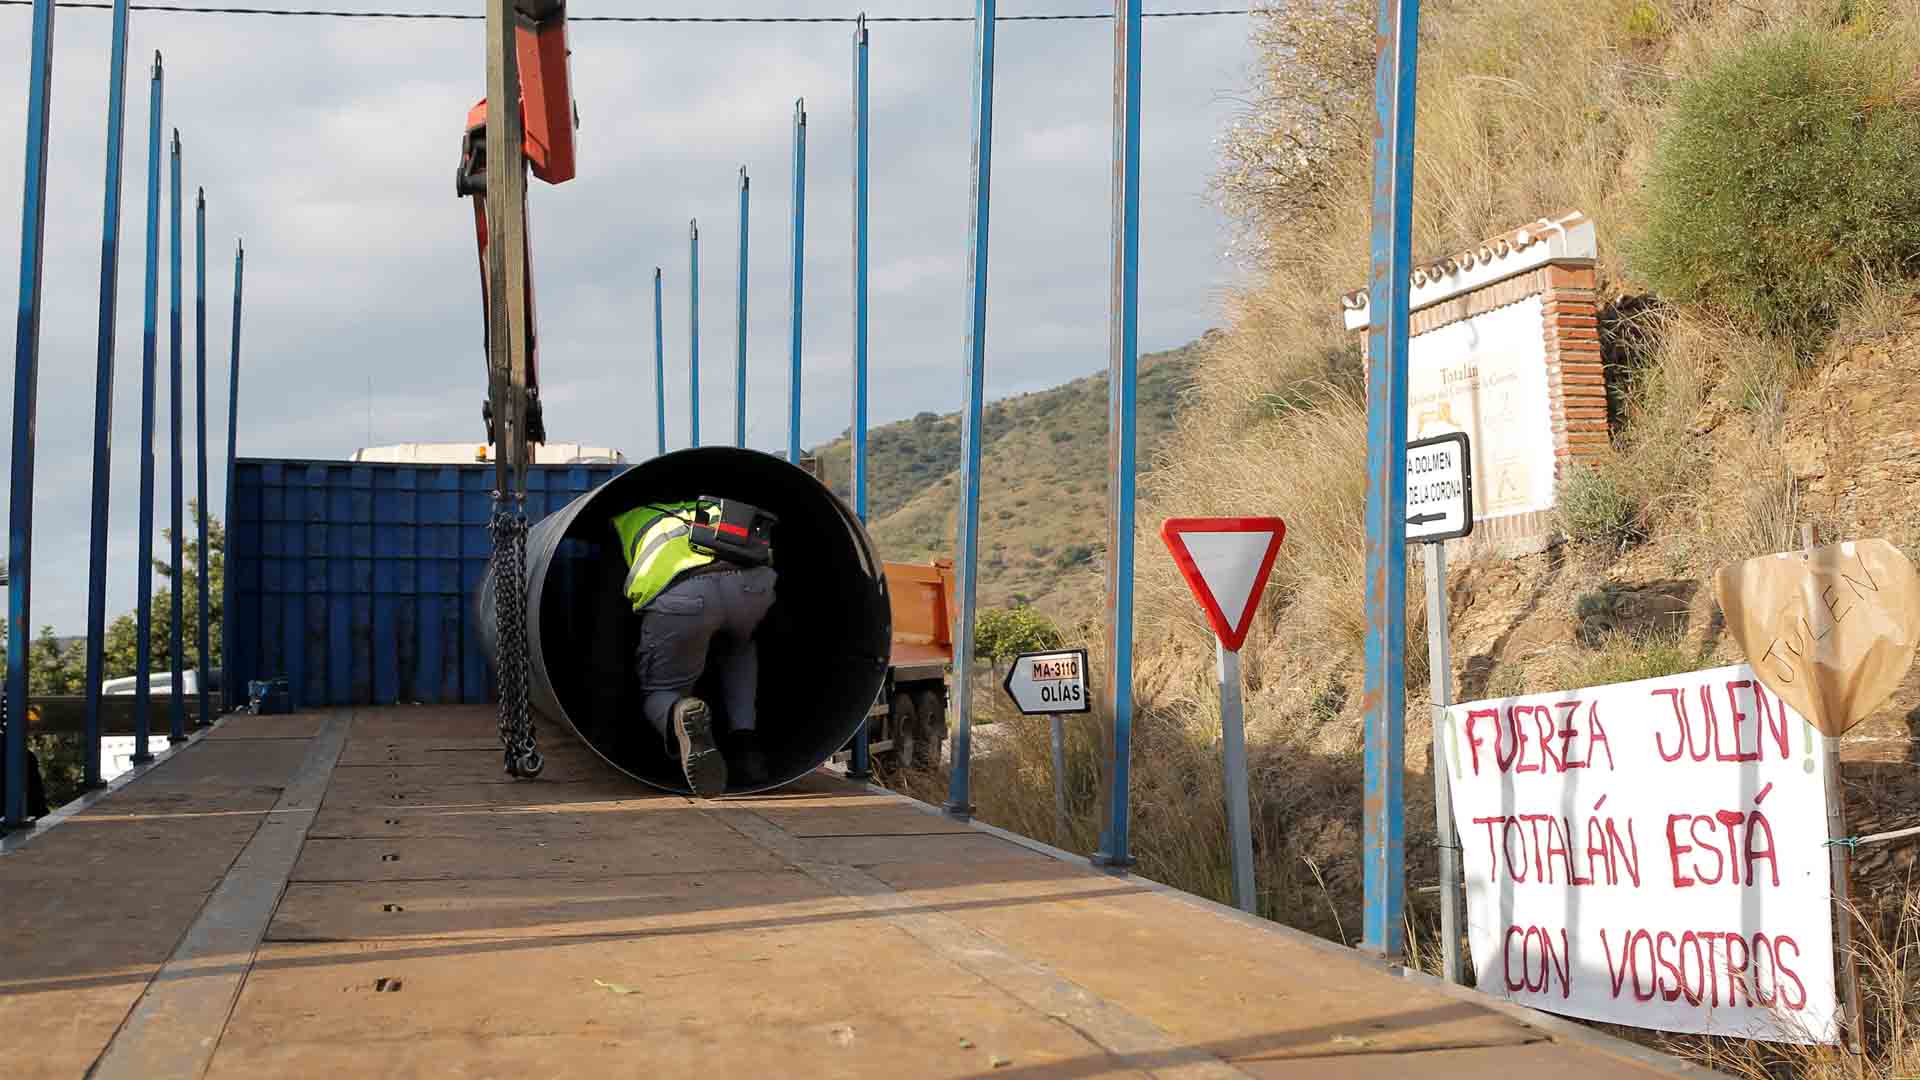 Los ingenieros se centran en abrir dos túneles verticales para rescatar a Julen en Totalán